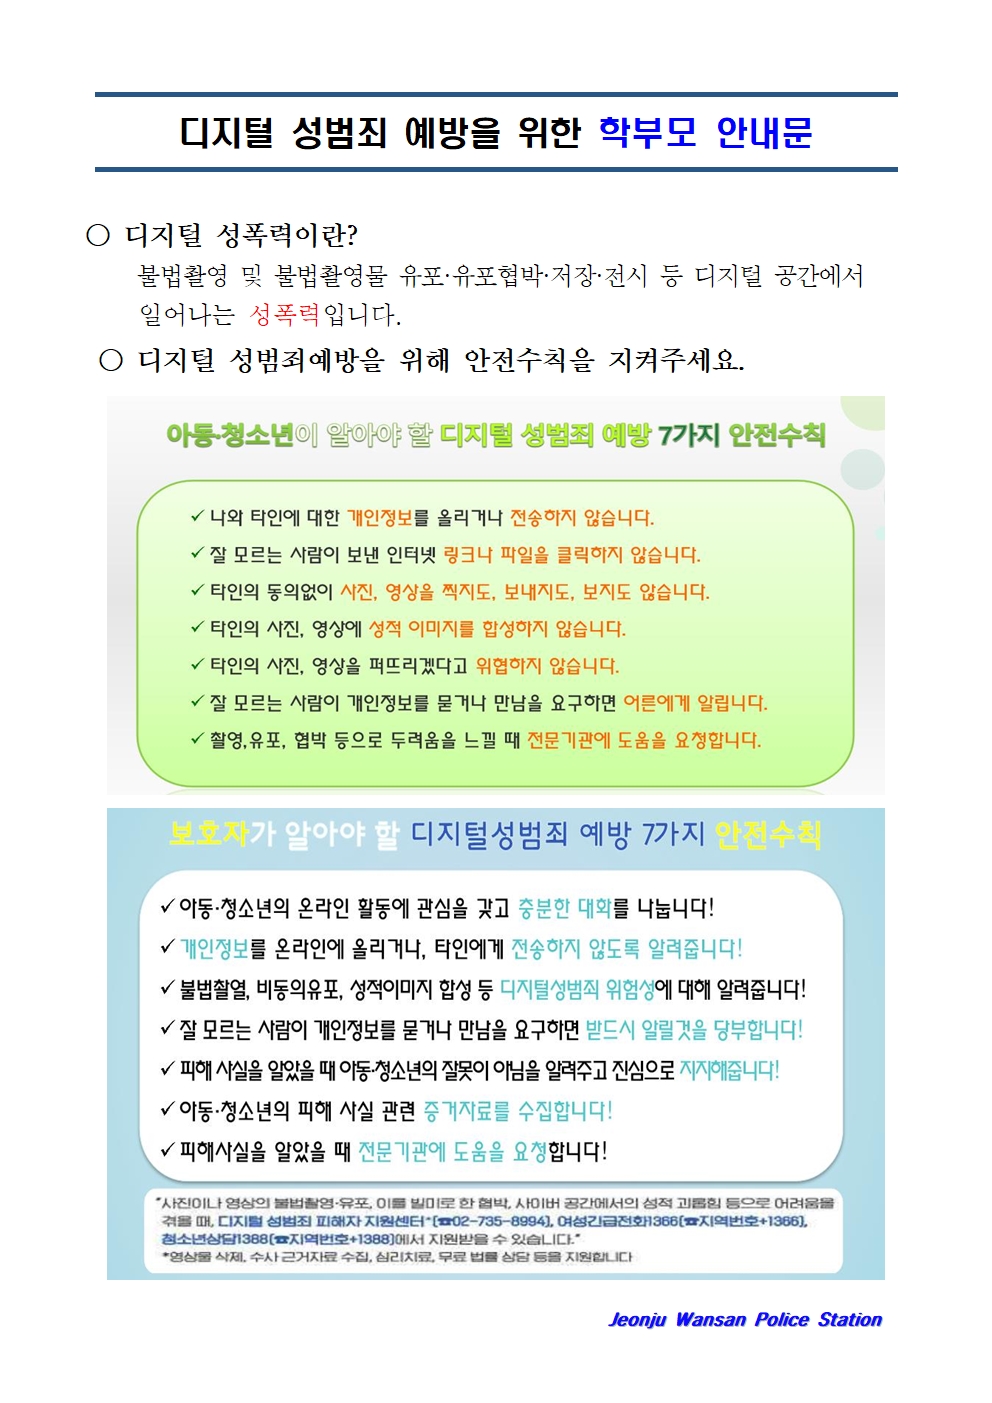 디지털 성범죄 예방 학부모 안내문001